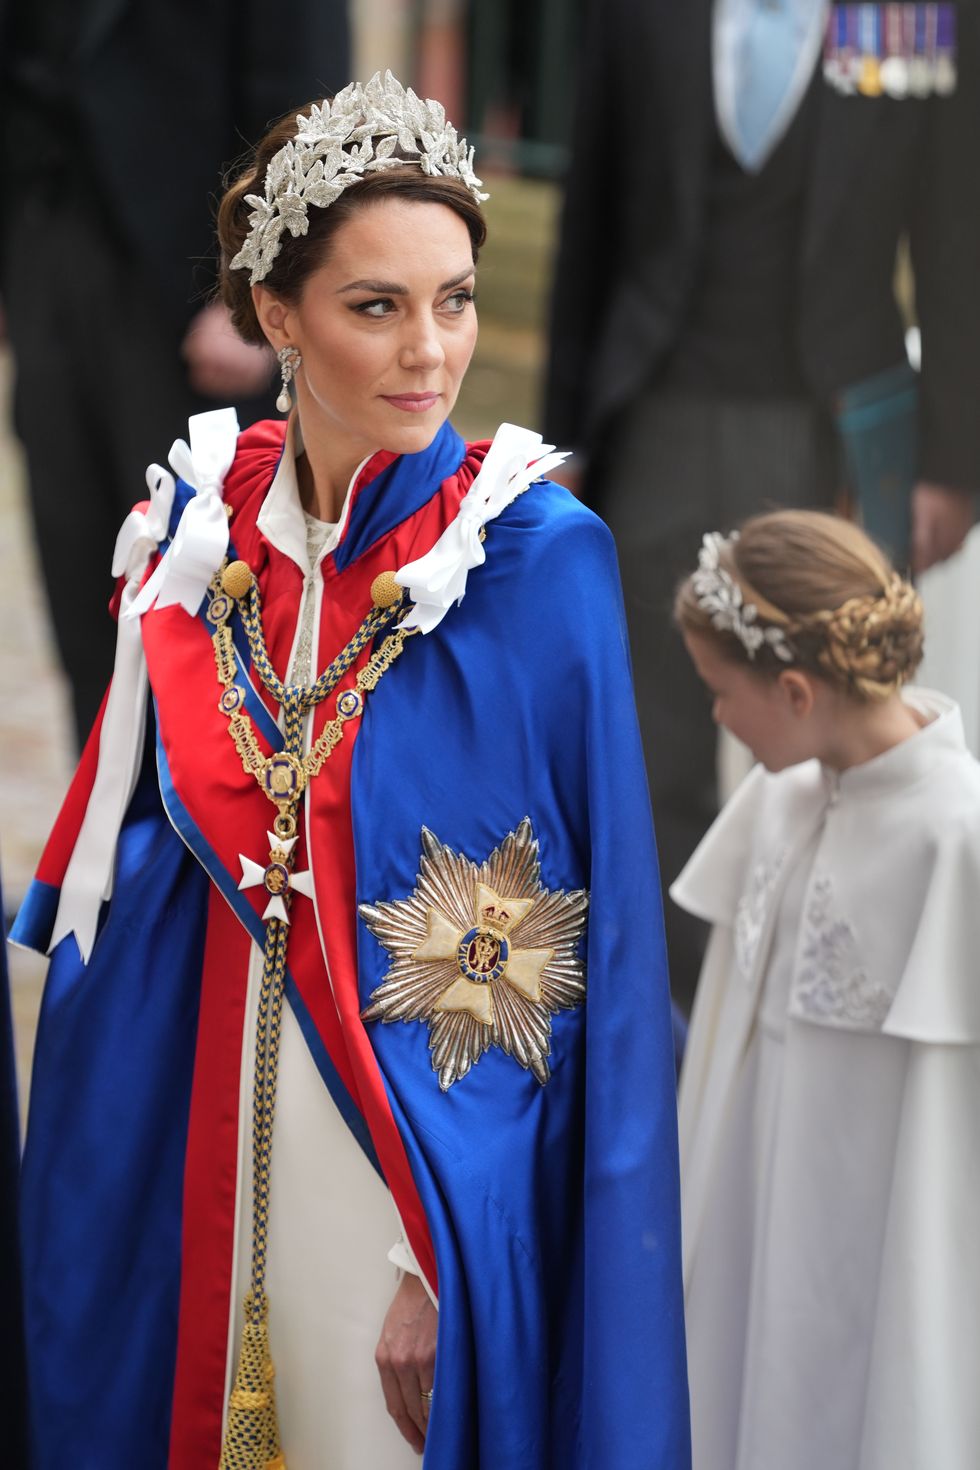 凱特王妃穿搭衣服品牌和夏綠蒂公主母女裝alexander mcqueen